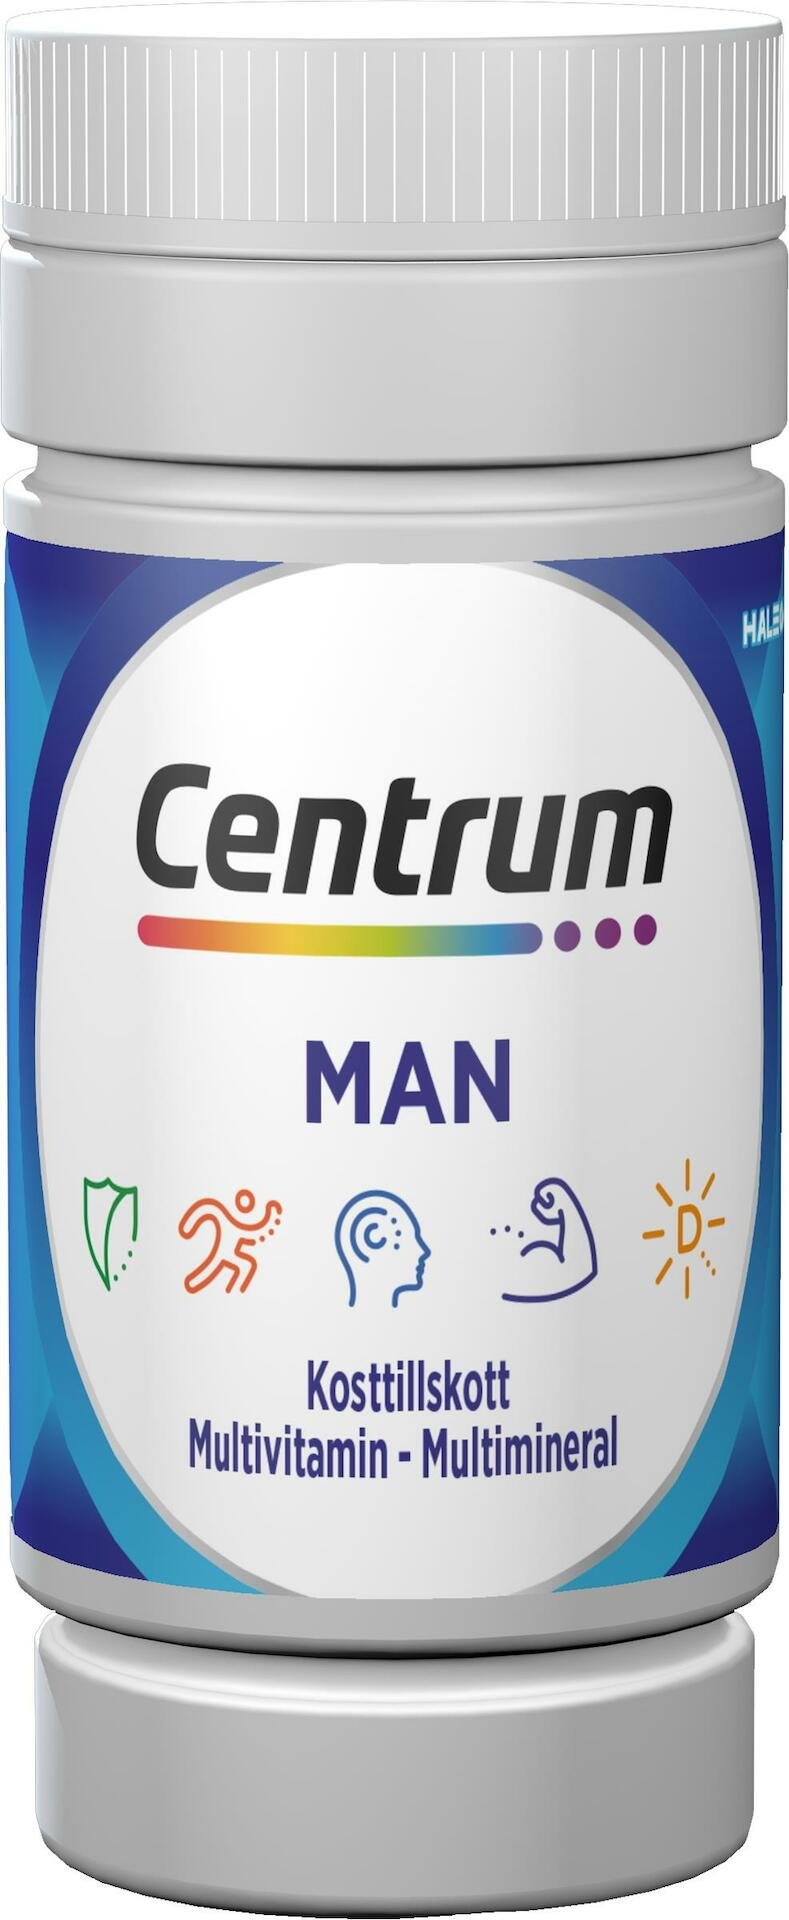 Centrum Man Multivitamin/Multimineral 90 tabletter